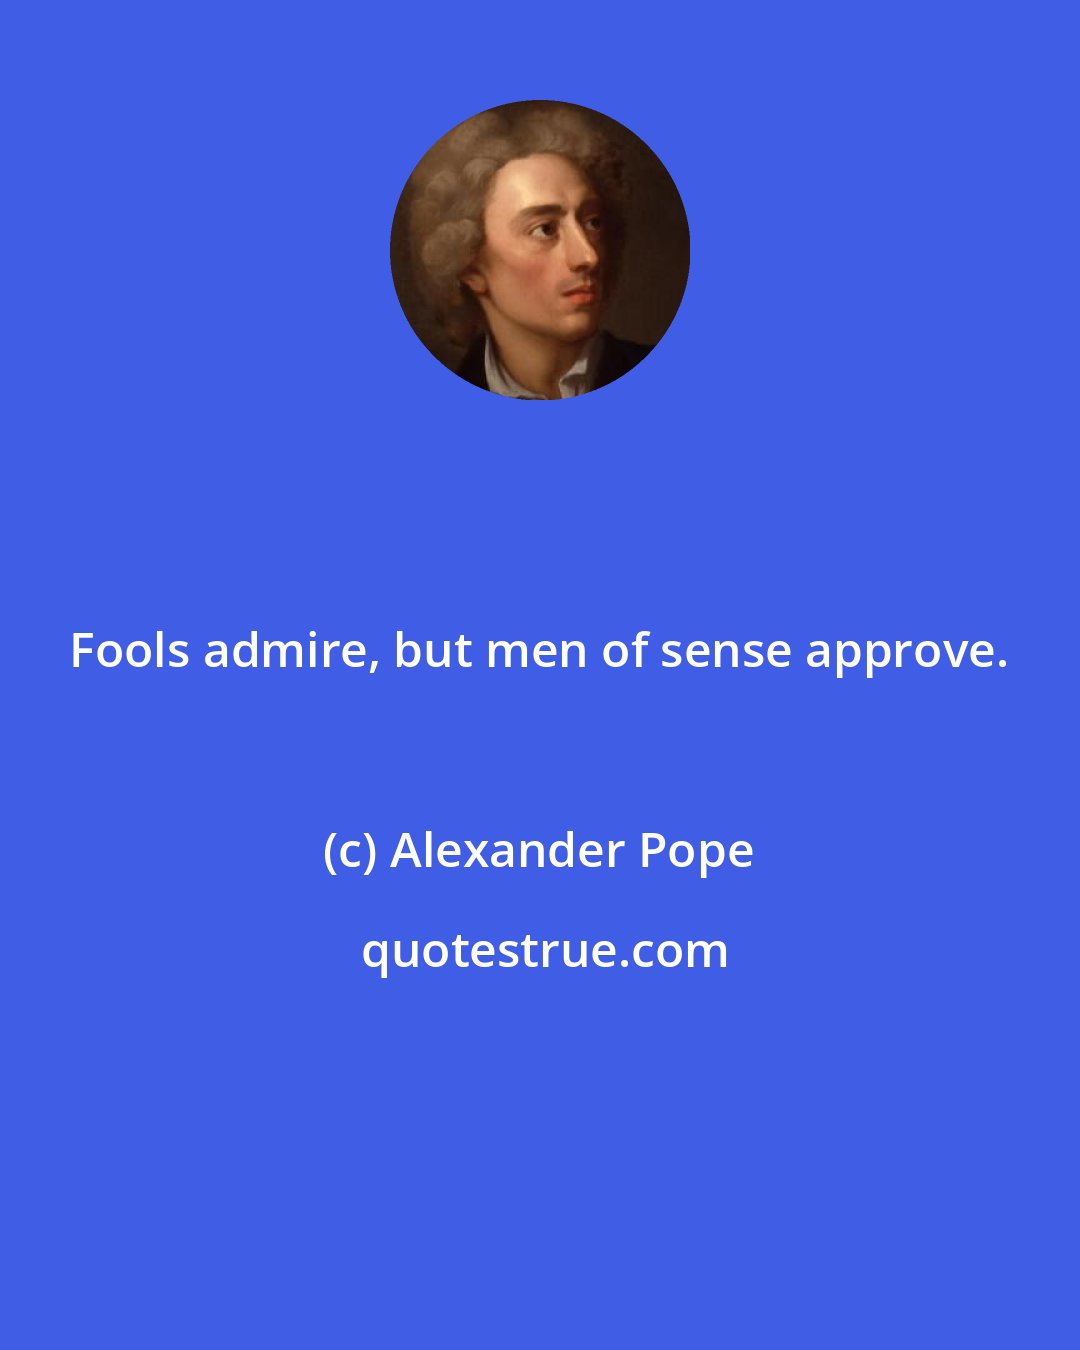 Alexander Pope: Fools admire, but men of sense approve.